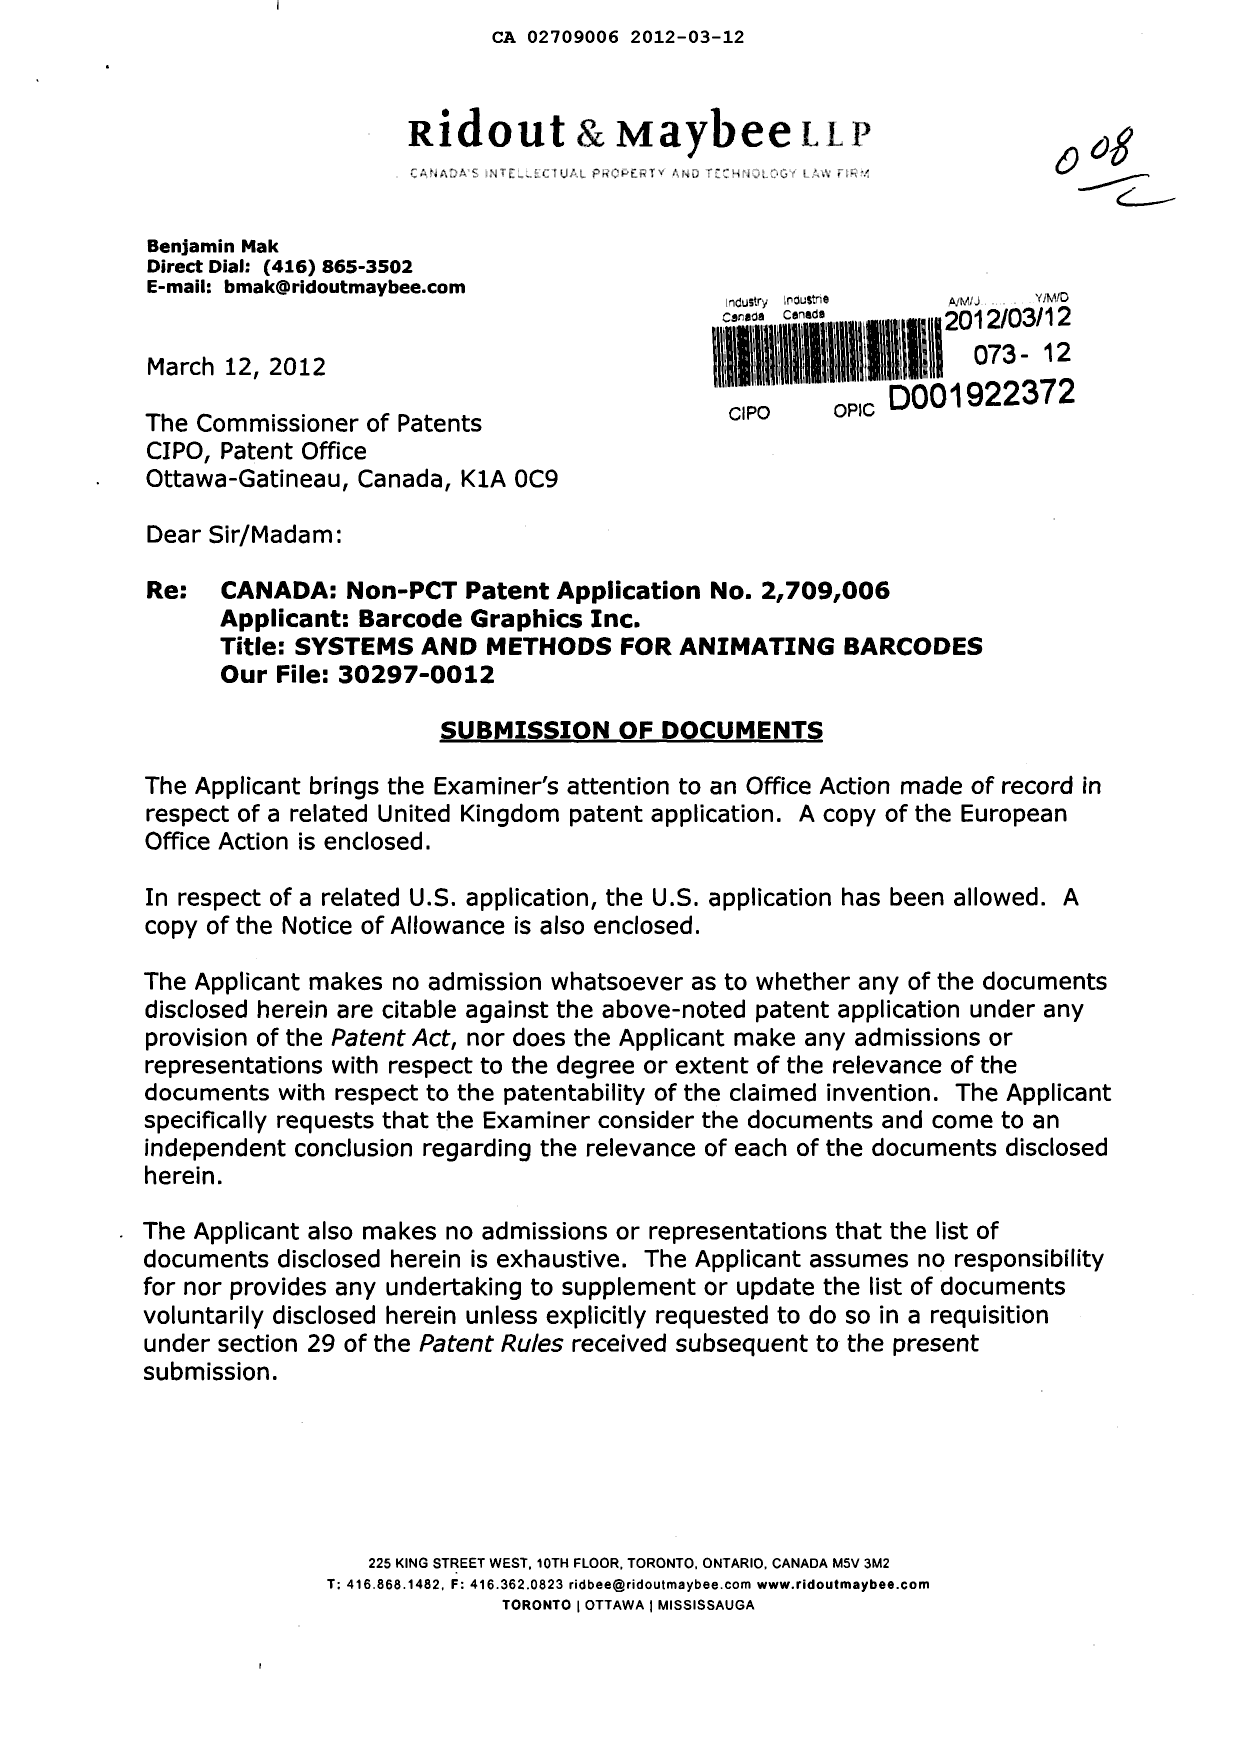 Document de brevet canadien 2709006. Poursuite-Amendment 20120312. Image 1 de 4